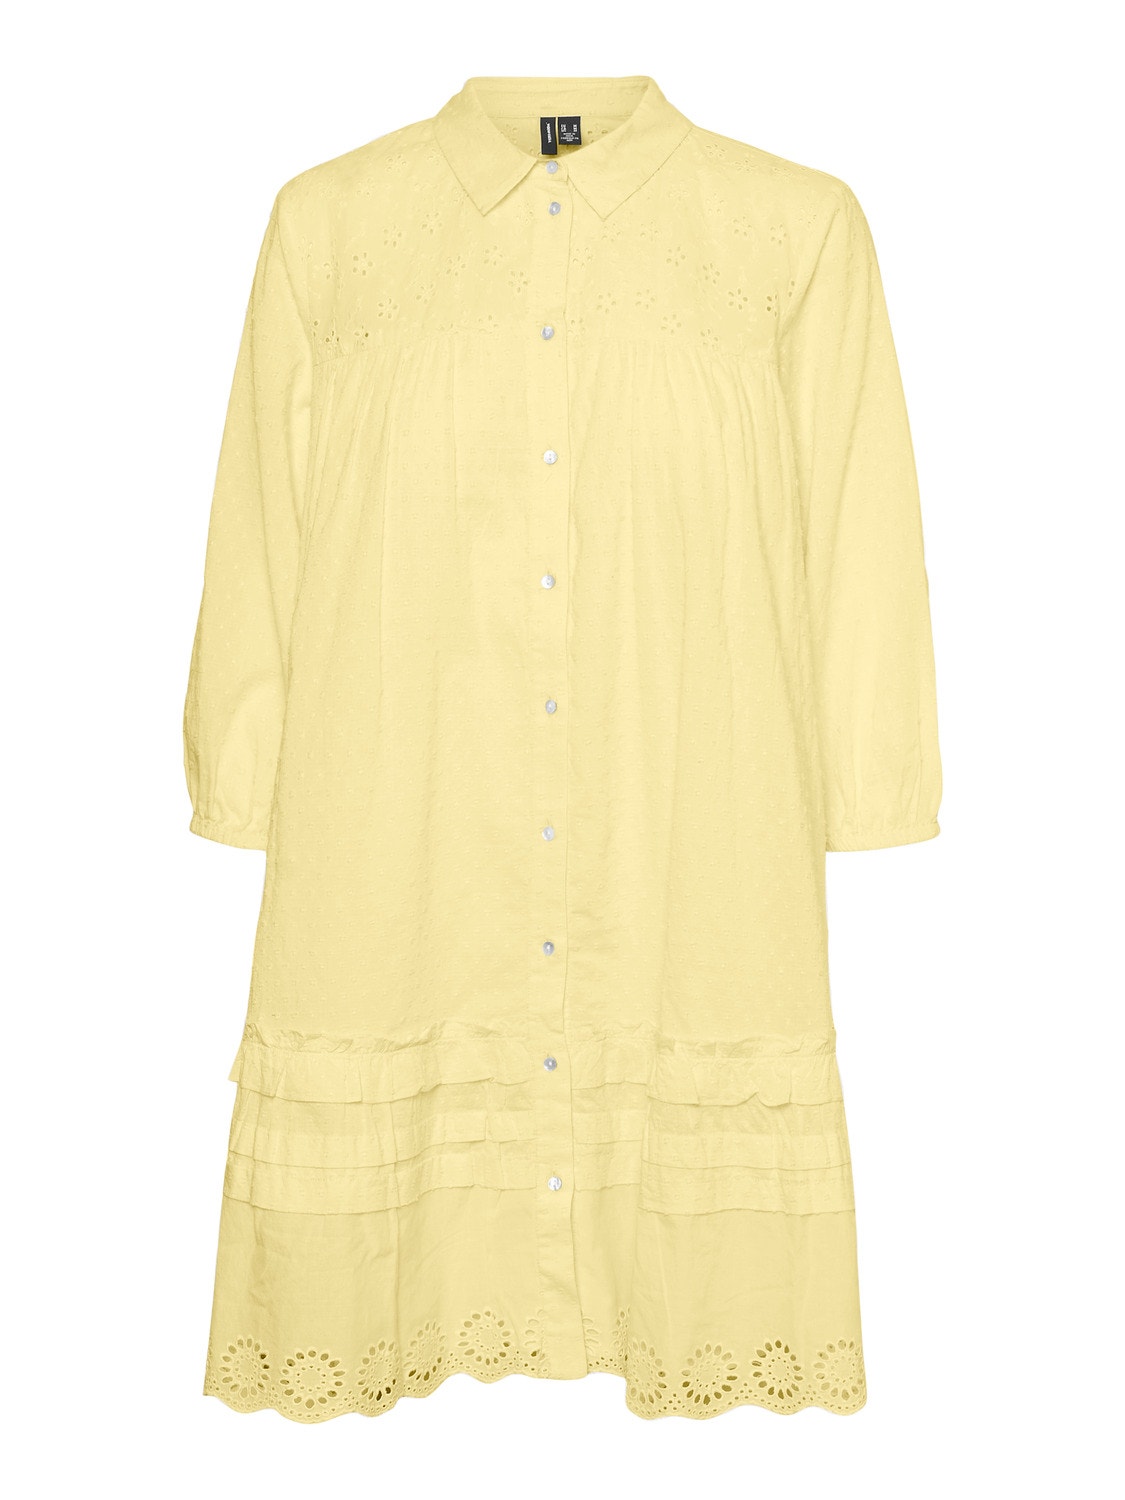 Vero Moda VMBELLA Krótka sukienka -Lemon Meringue - 10272480